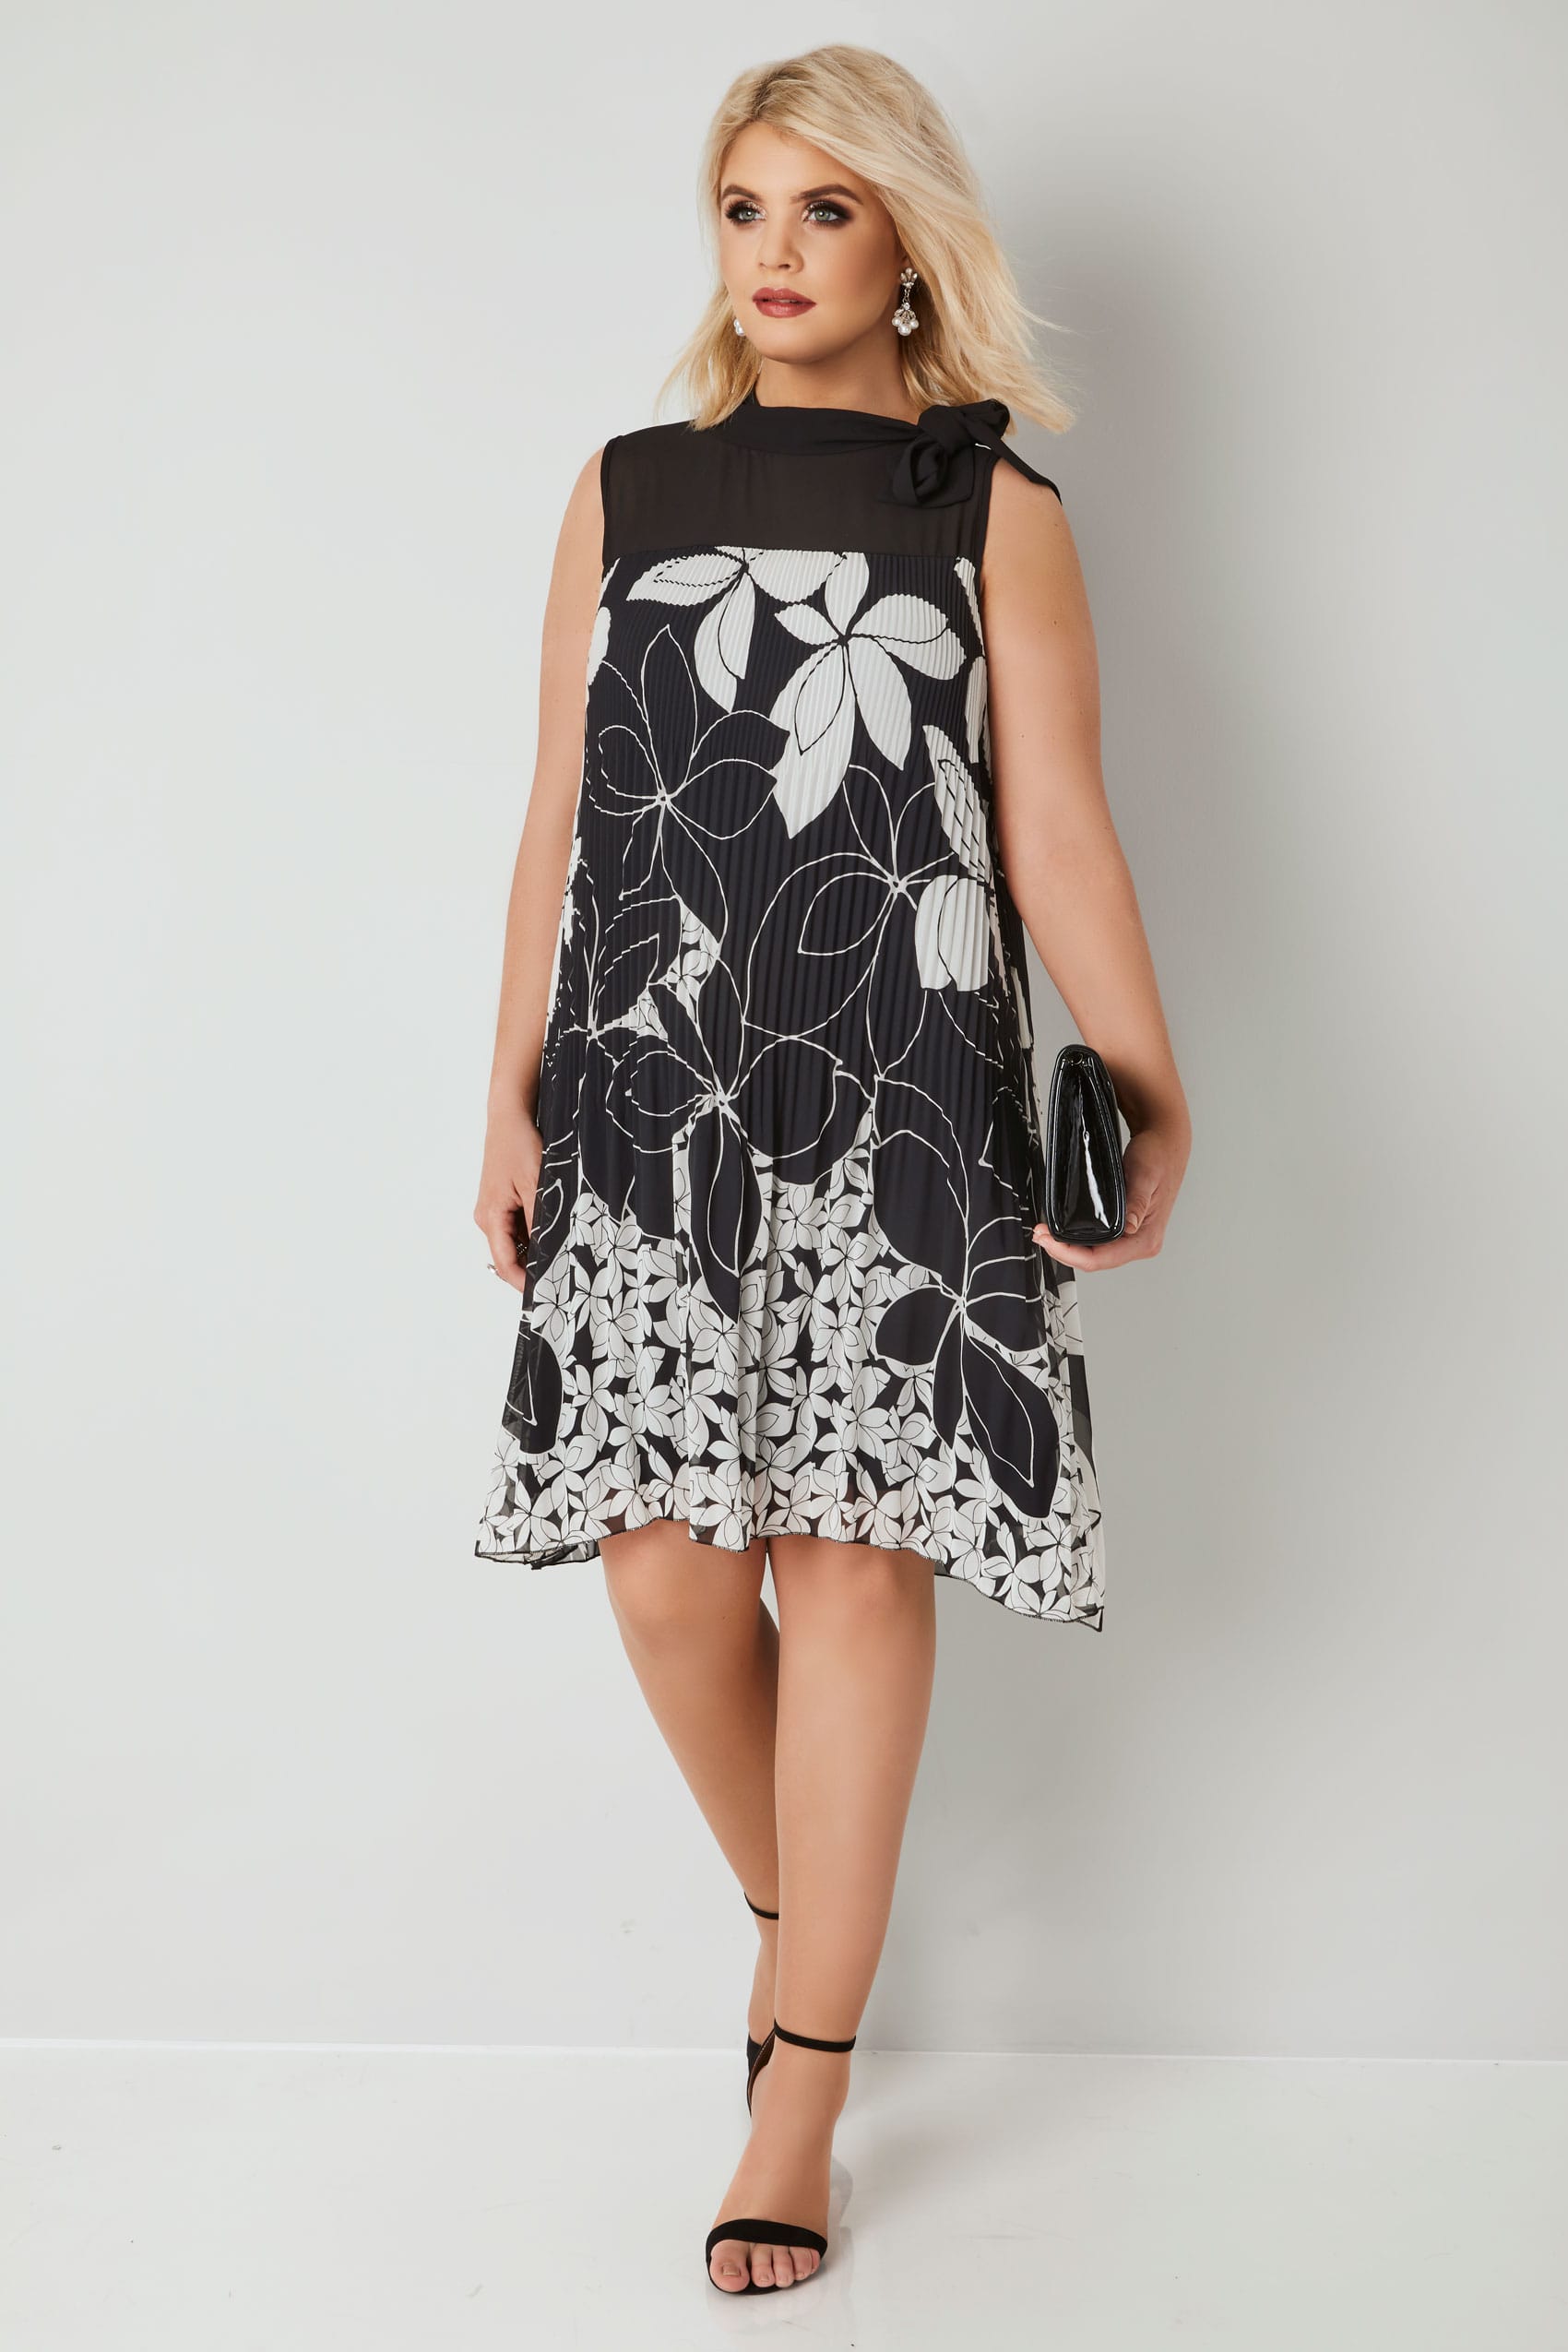 PAPRIKA Black & White Floral Print Plisse Dress, plus size 16 to 26